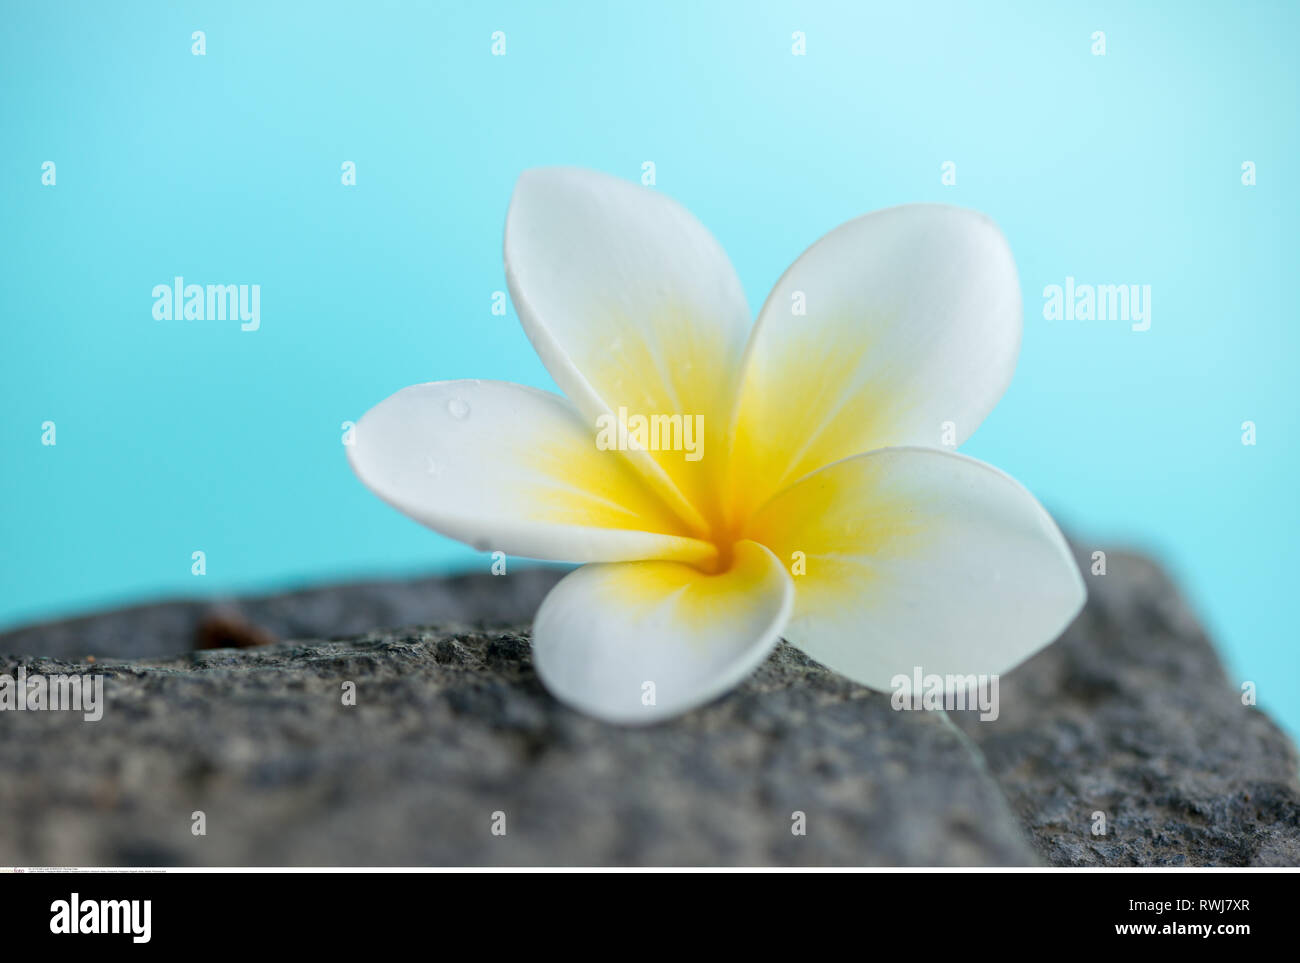 La botanica, Frangipani blossom, attenzione! Per Greetingcard-Use / Postcard-Use nei Paesi di lingua tedesca talune restrizioni possono applicare Foto Stock